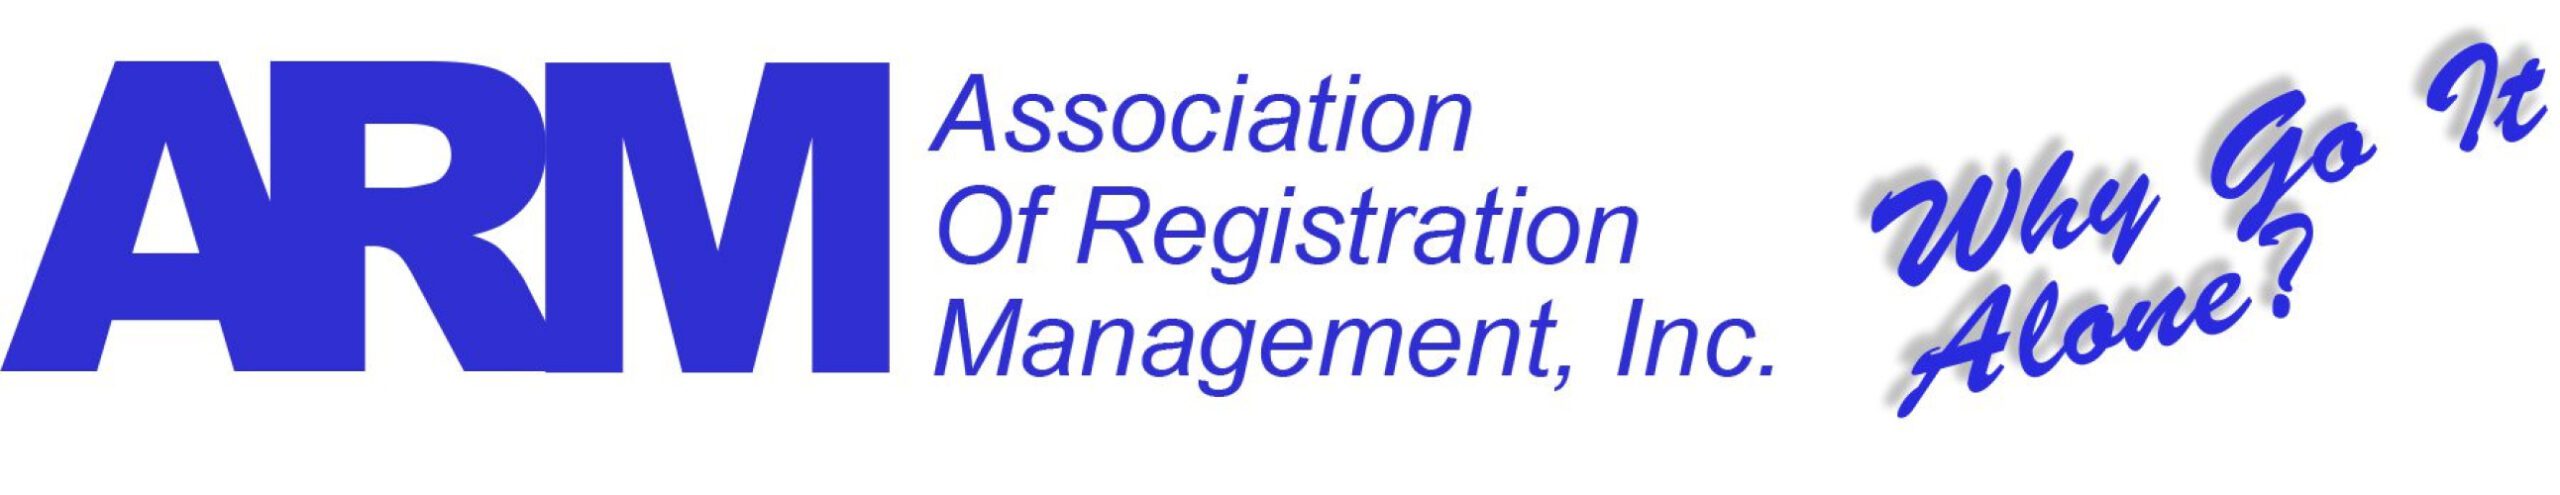 Association of Registration Management, Inc.